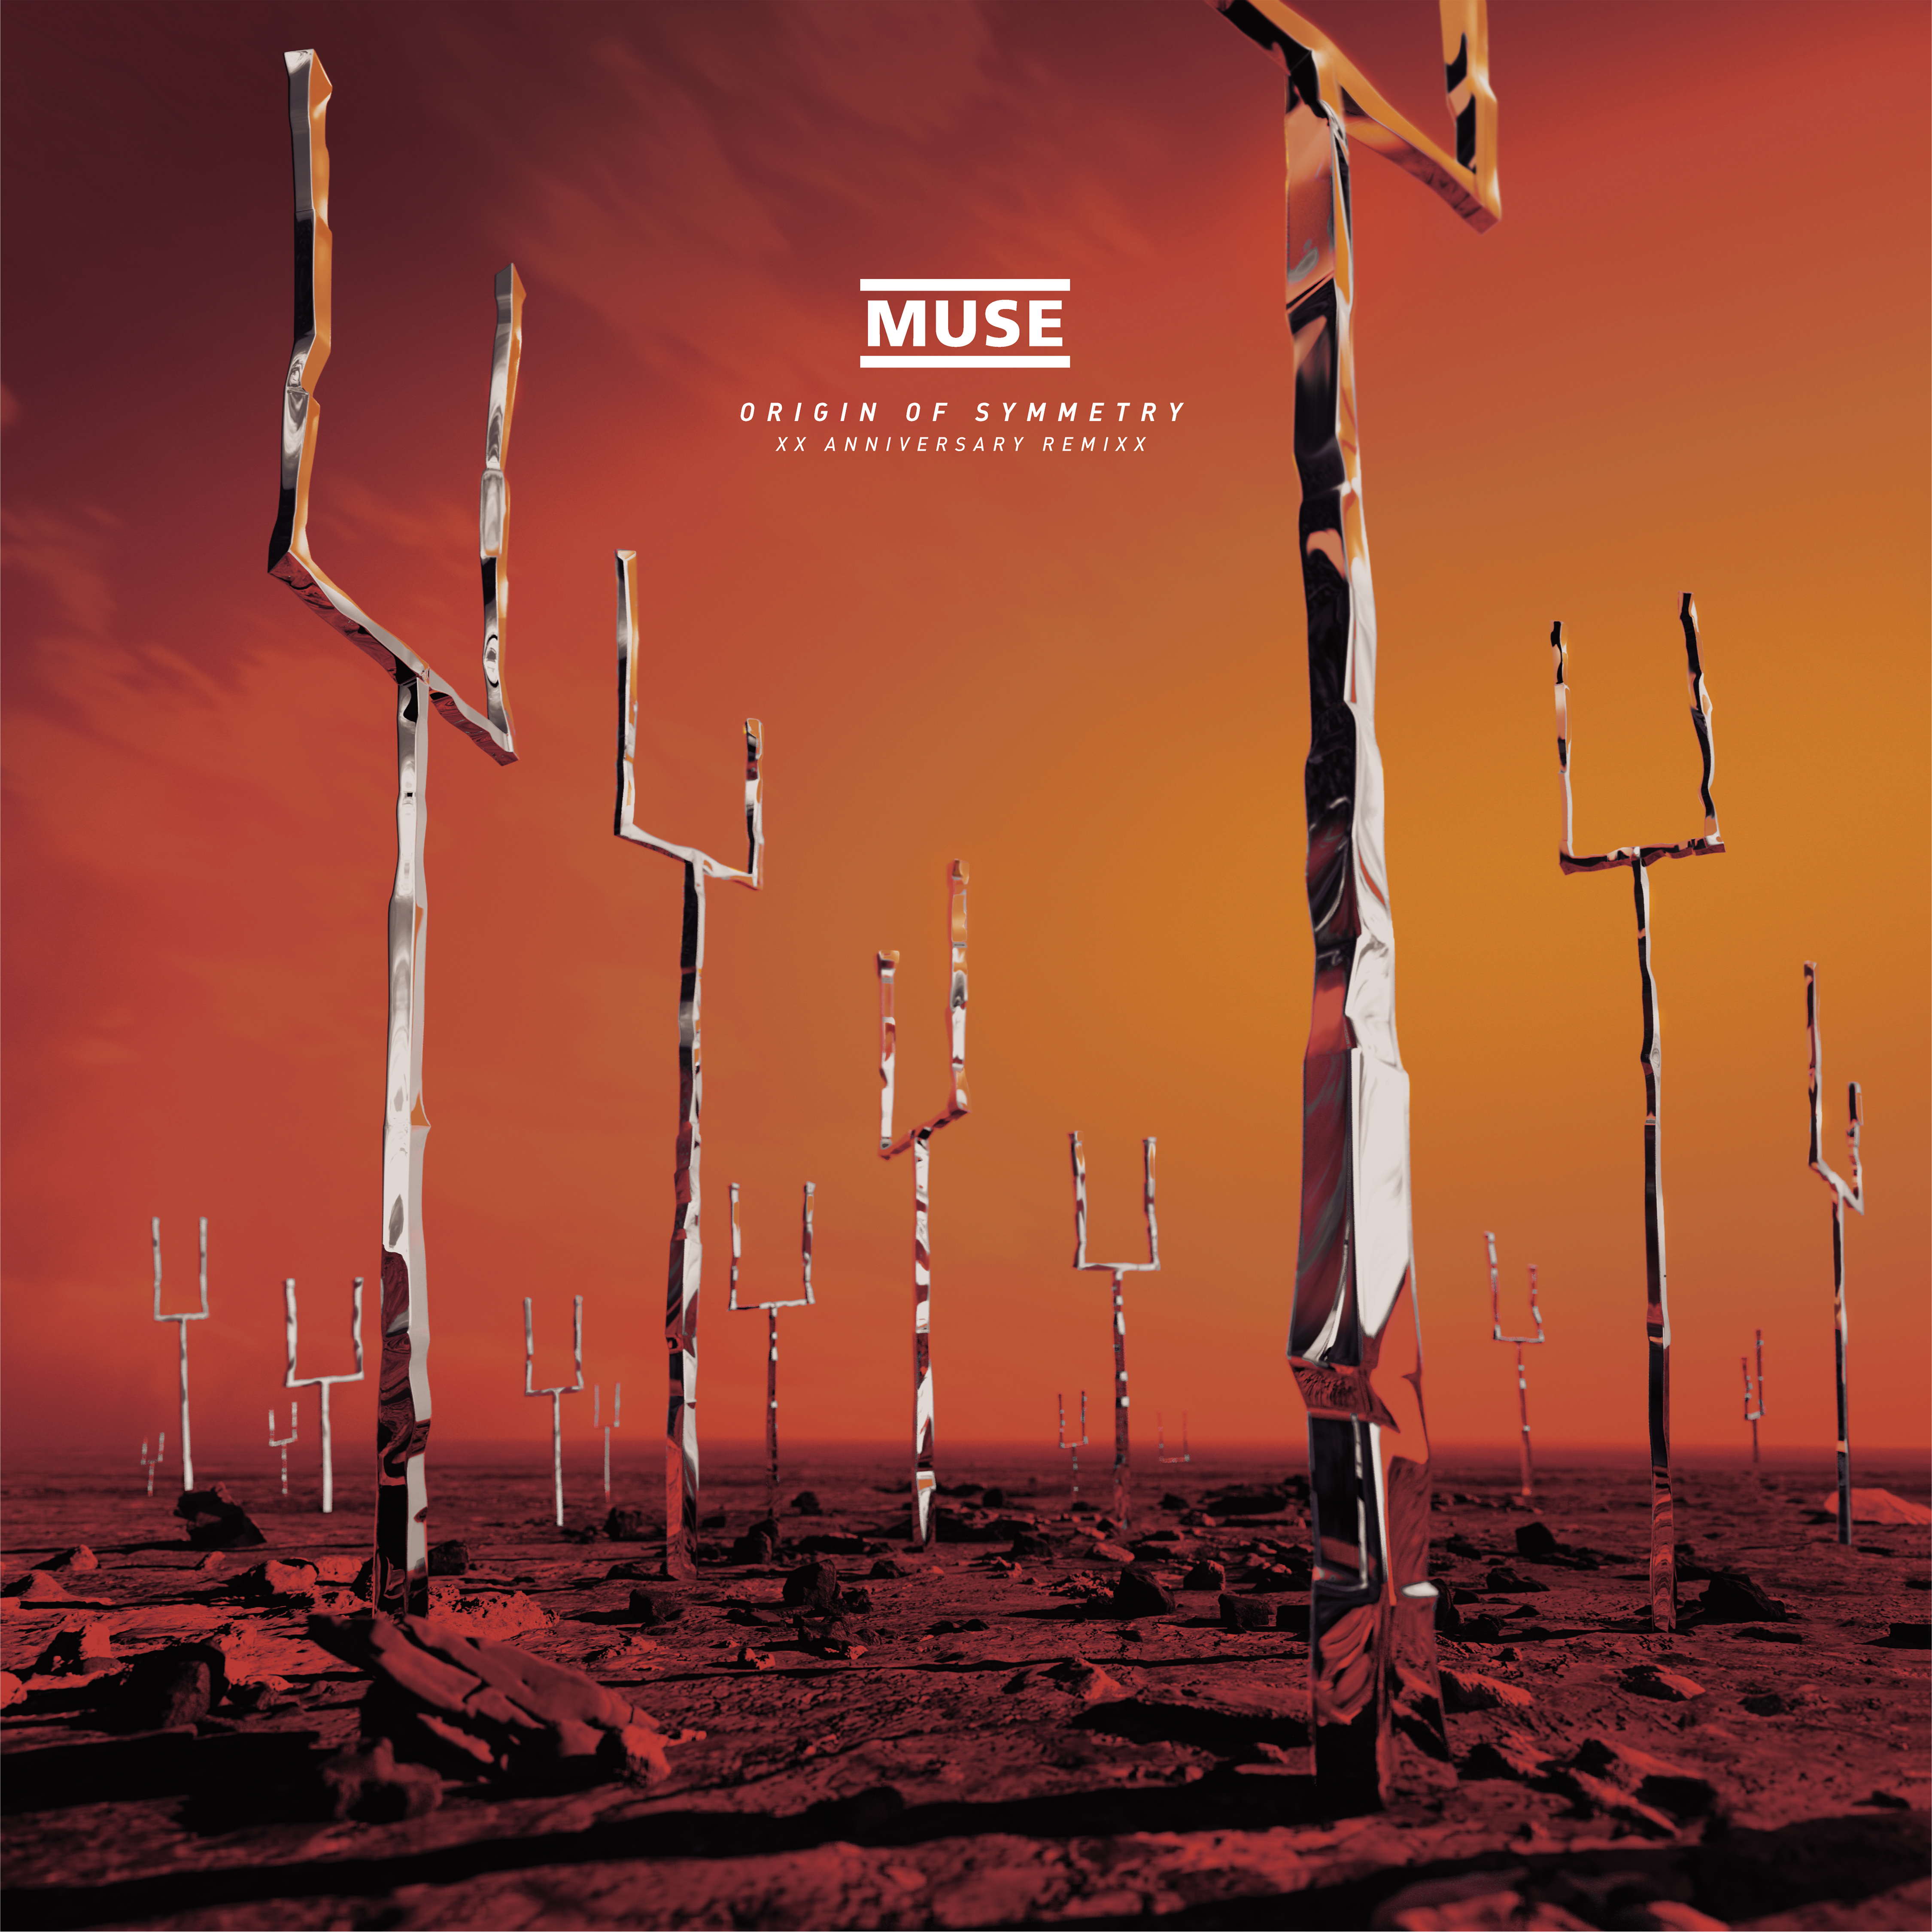 Album Origin Of Symmetry của ban nhạc Muse là một trong những album kinh điển trong lịch sử âm nhạc. Hãy xem hình ảnh và tìm hiểu về nguyên nhân hình thành album này trên trang chủ chính thức của ban nhạc Muse.